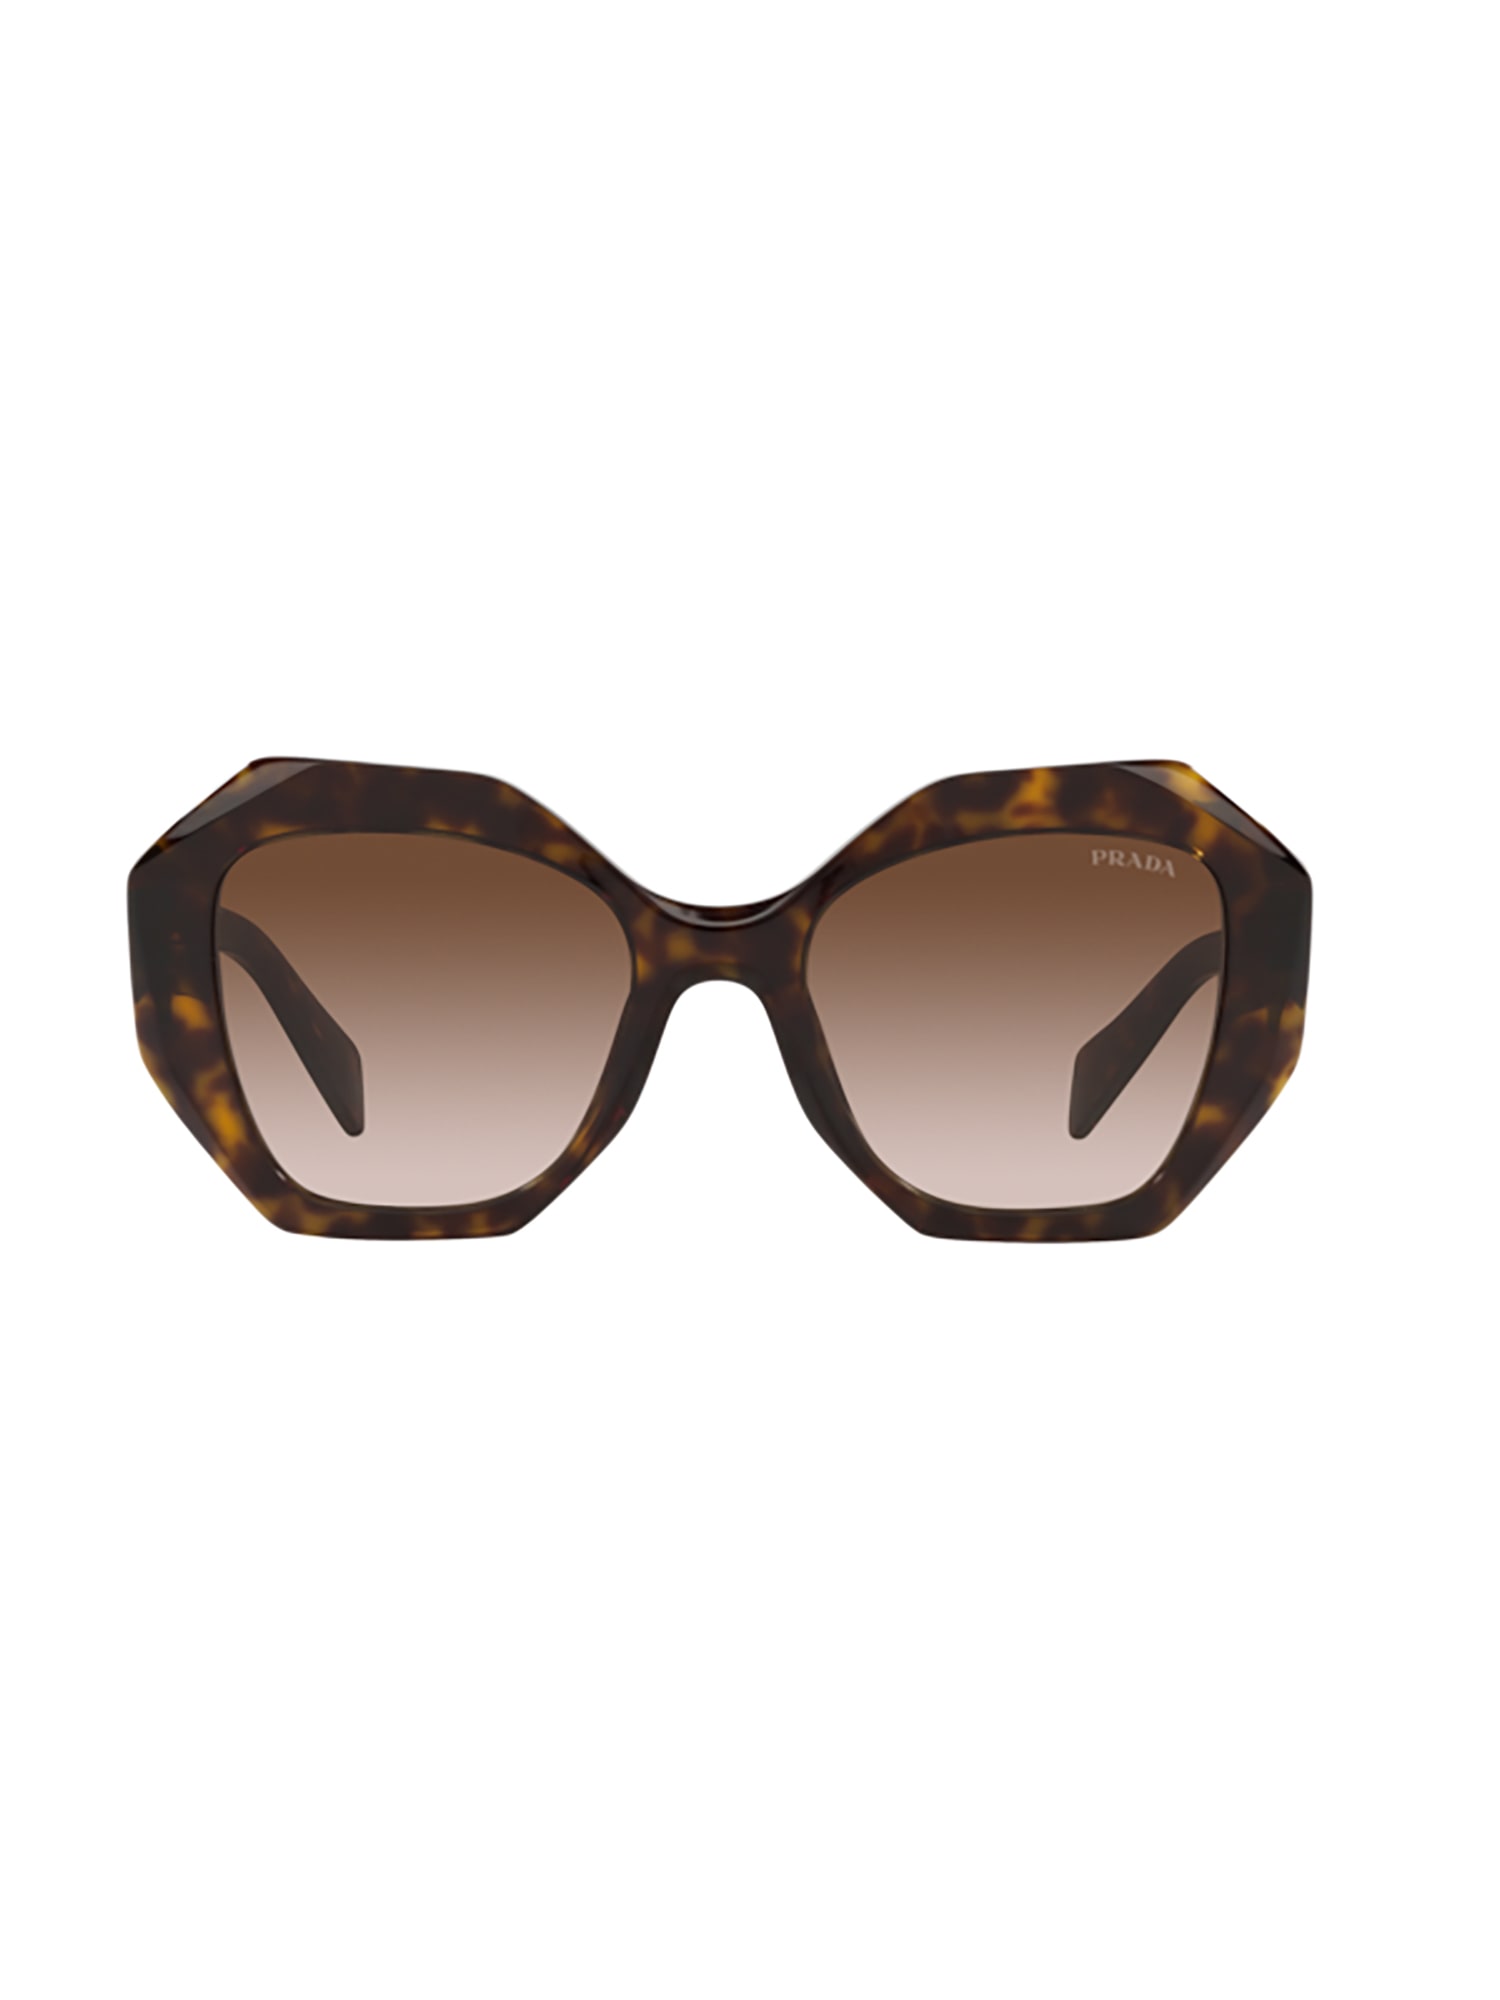 Shop Prada 16ws Sole Sunglasses